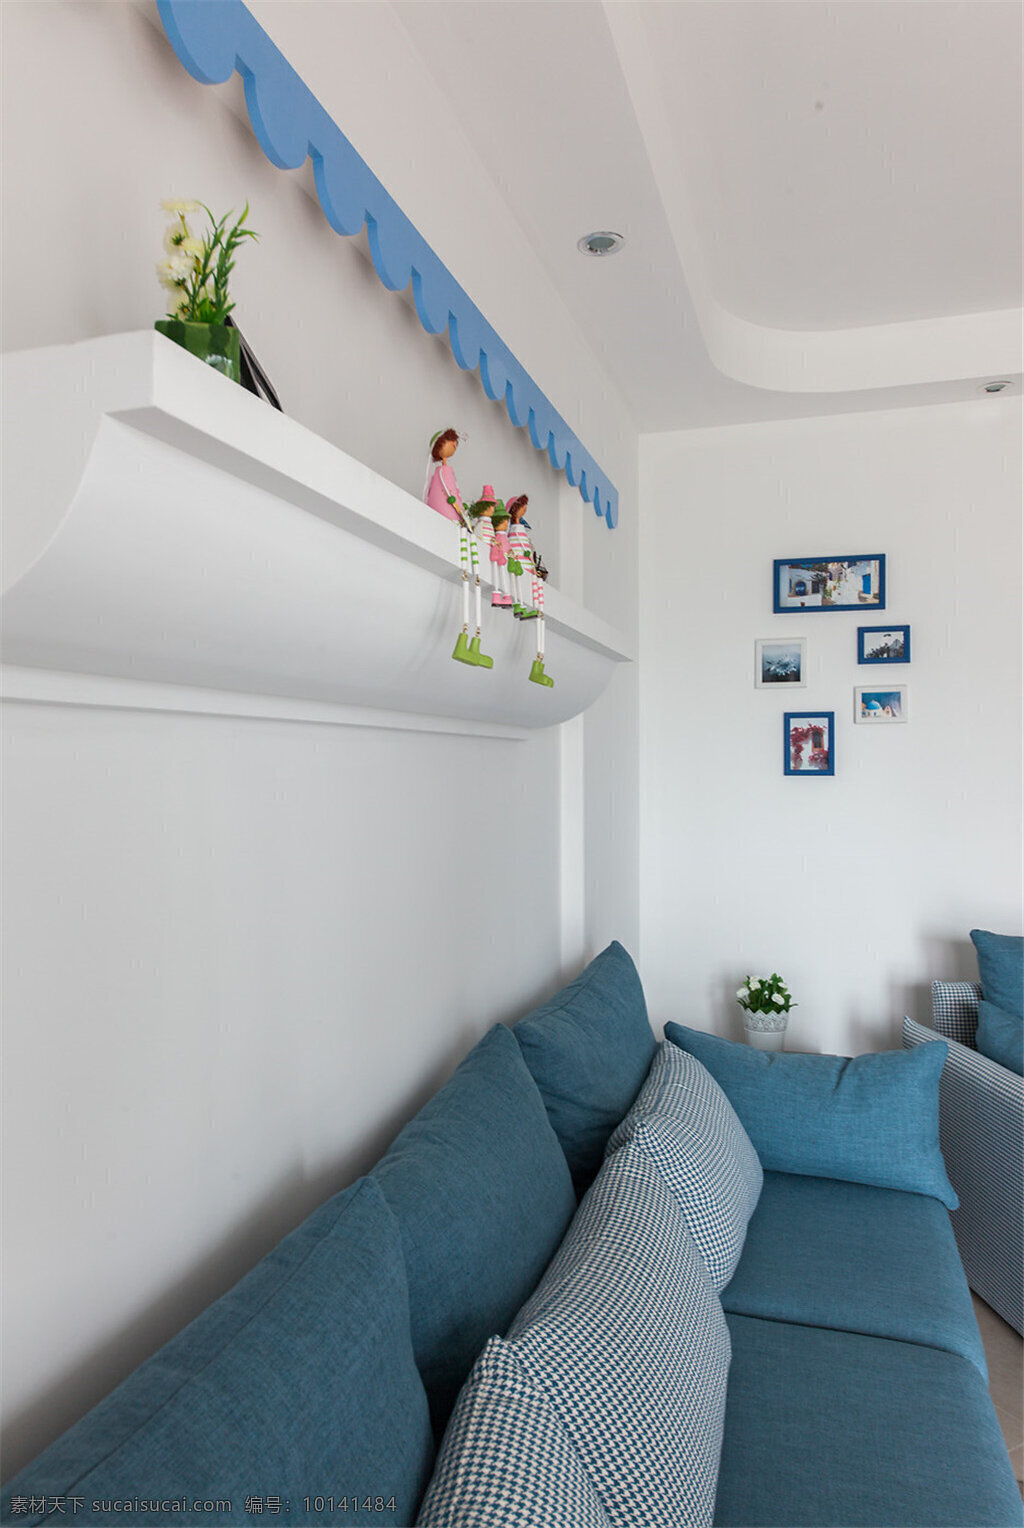 现代 简 欧 风格 客厅 照片 墙 墙壁 装修 效果图 简欧风格 玄关 客厅装修 石膏墙壁 白色 高清大图